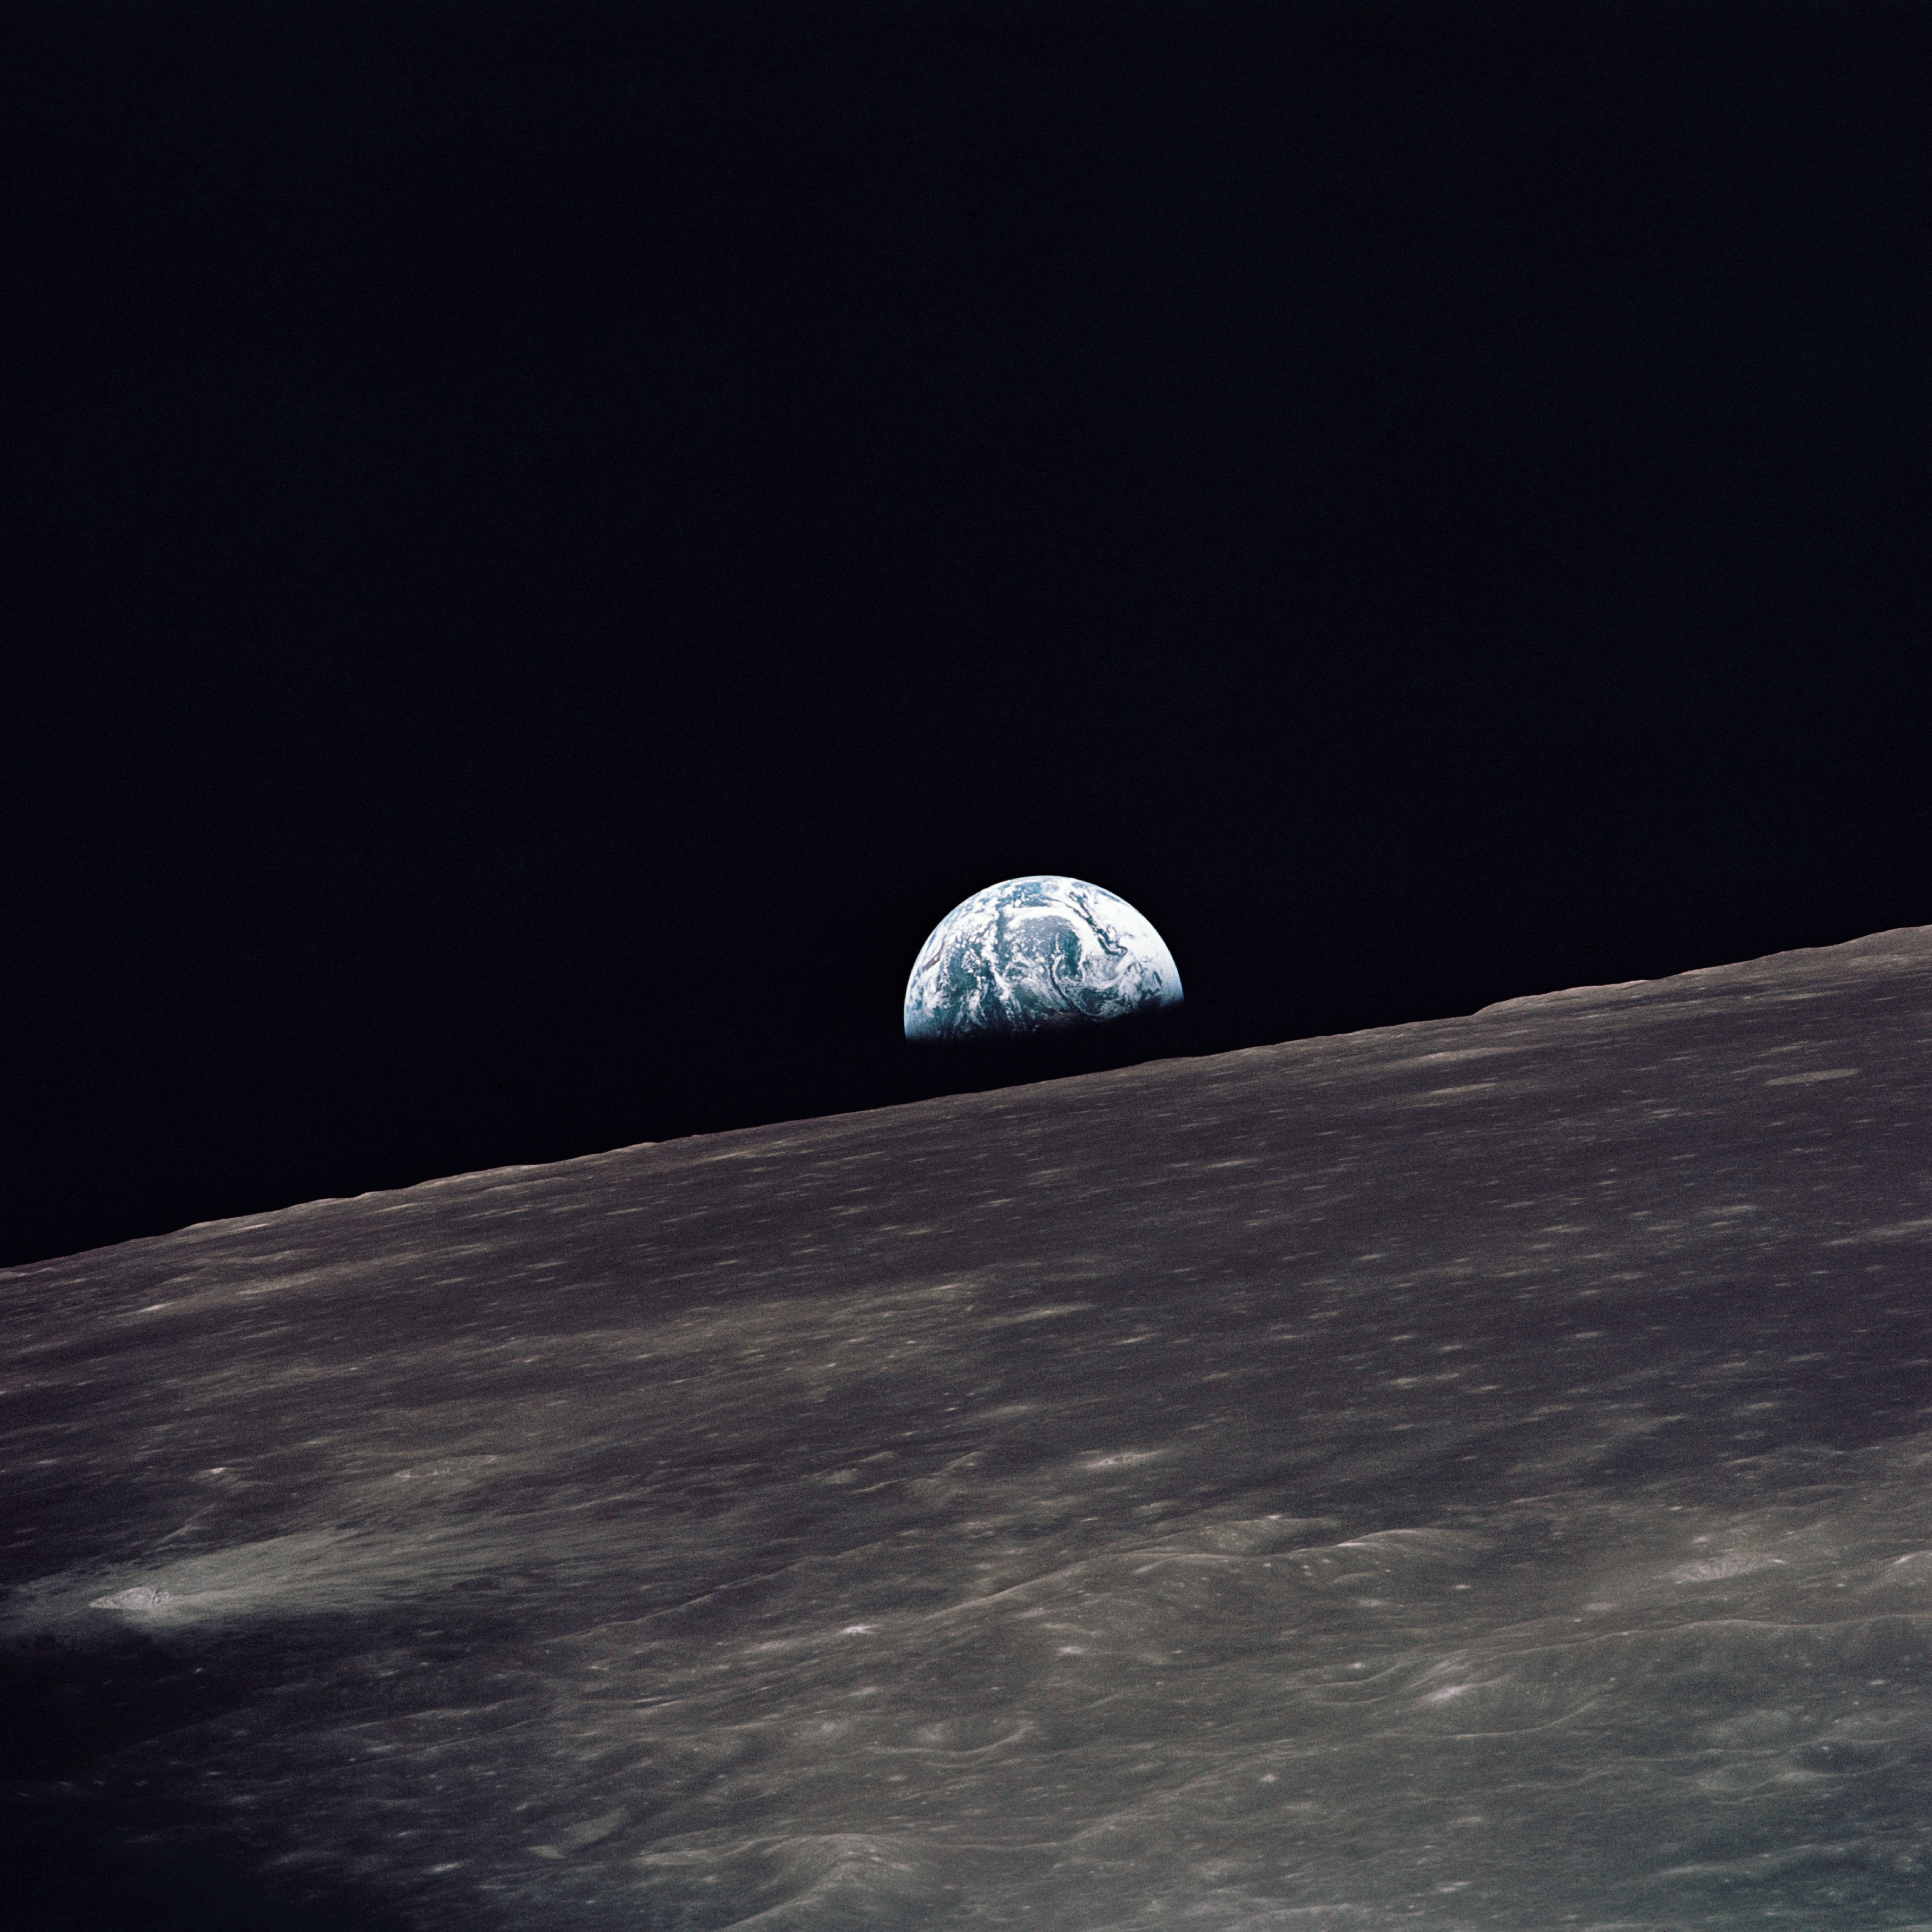 अपोलो १० द्वारा चन्द्रमा पर पृथ्वी उदय